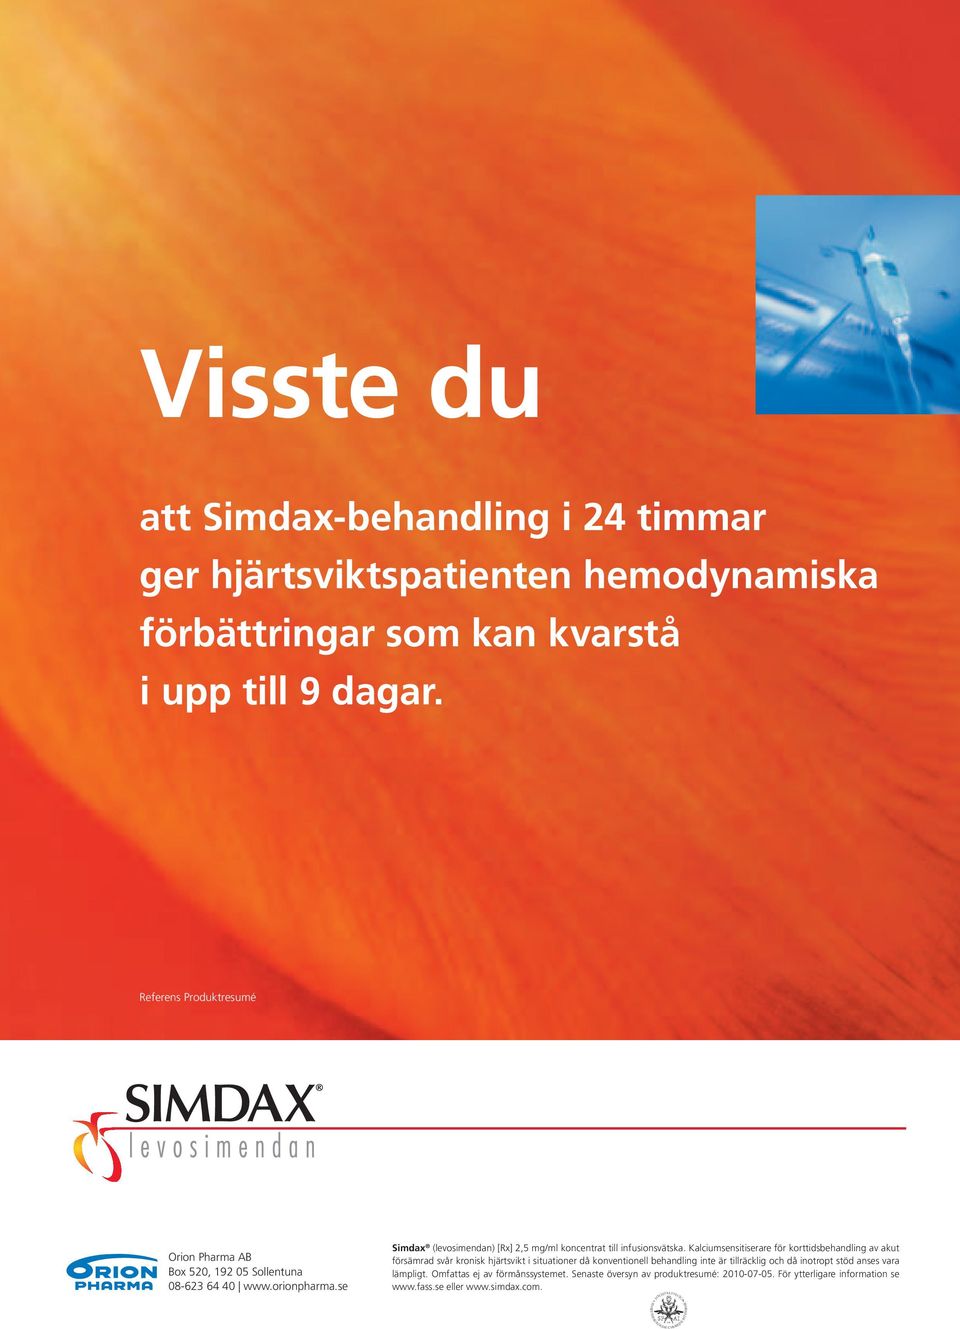 se Simdax (levosimendan) [Rx] 2,5 mg/ml koncentrat till infusionsvätska.